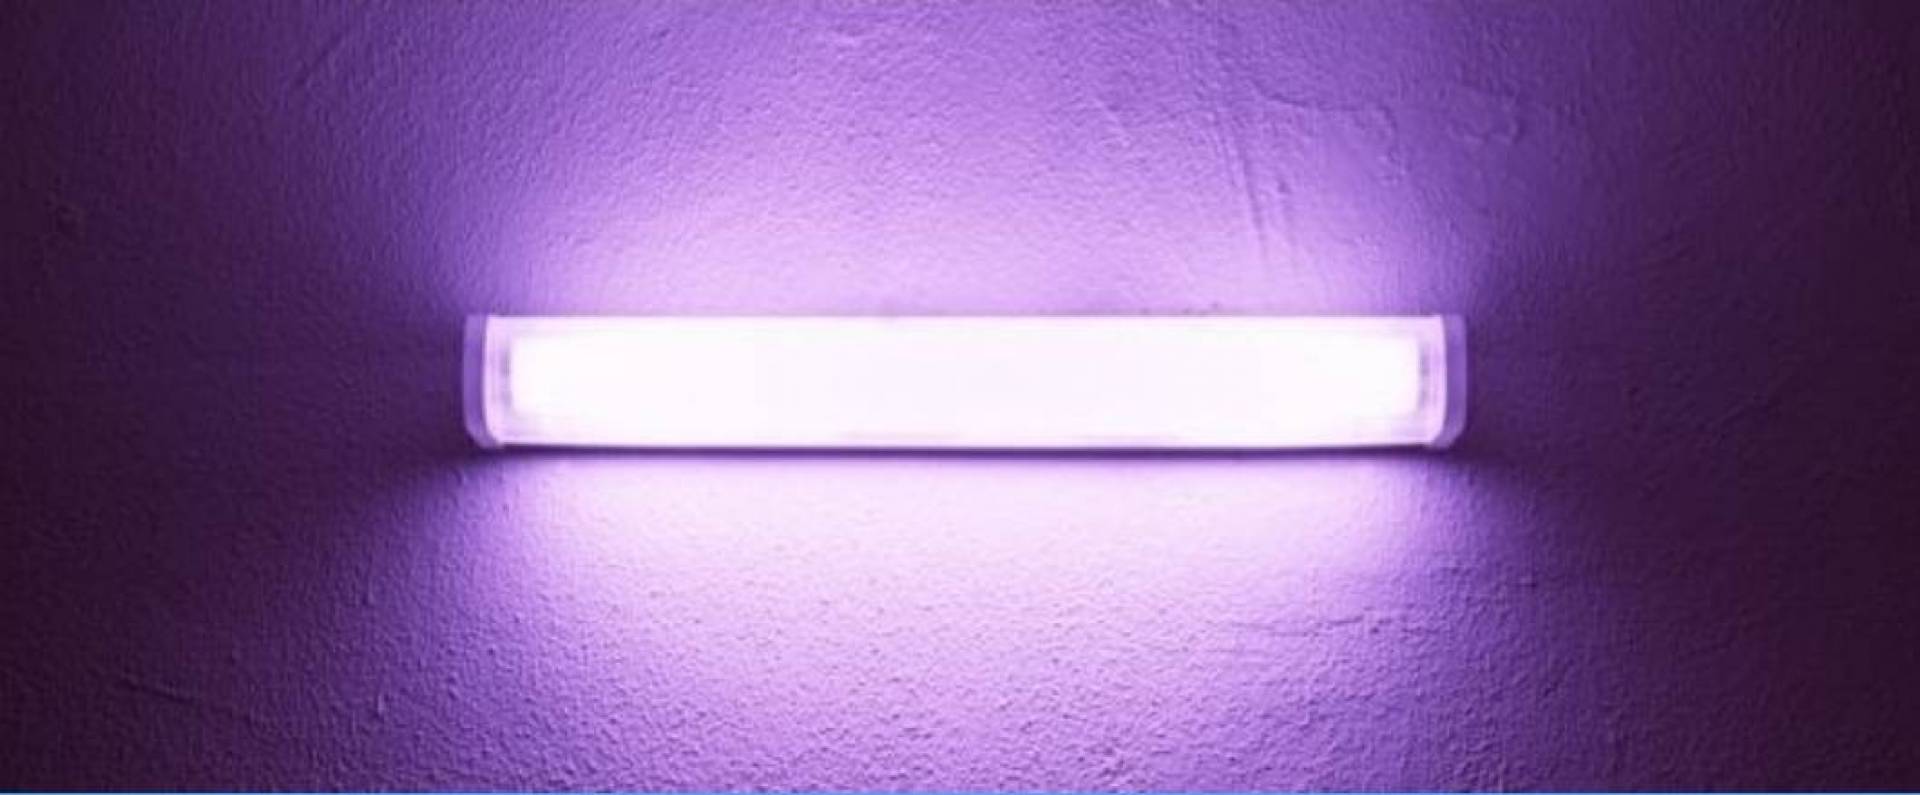 фото ультрафиолетового света